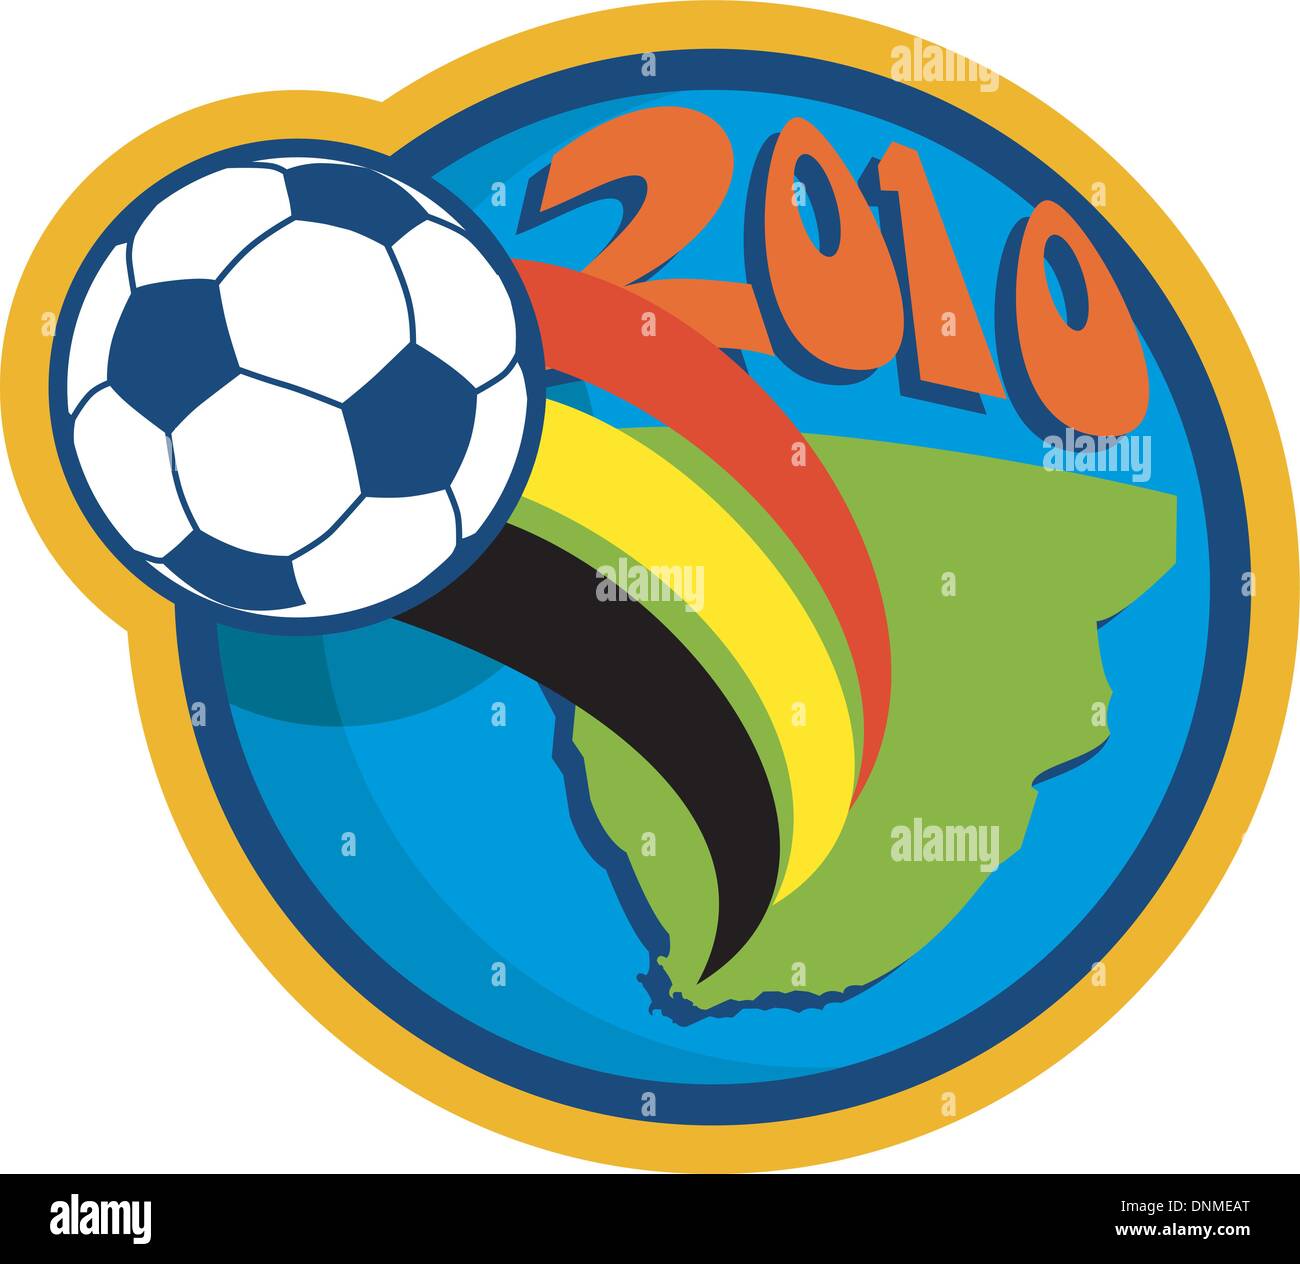 Illustrazione di un icona per il 2010 Coppa del Mondo di calcio con sfera fying oltre il globo con cartina del sud africa Illustrazione Vettoriale